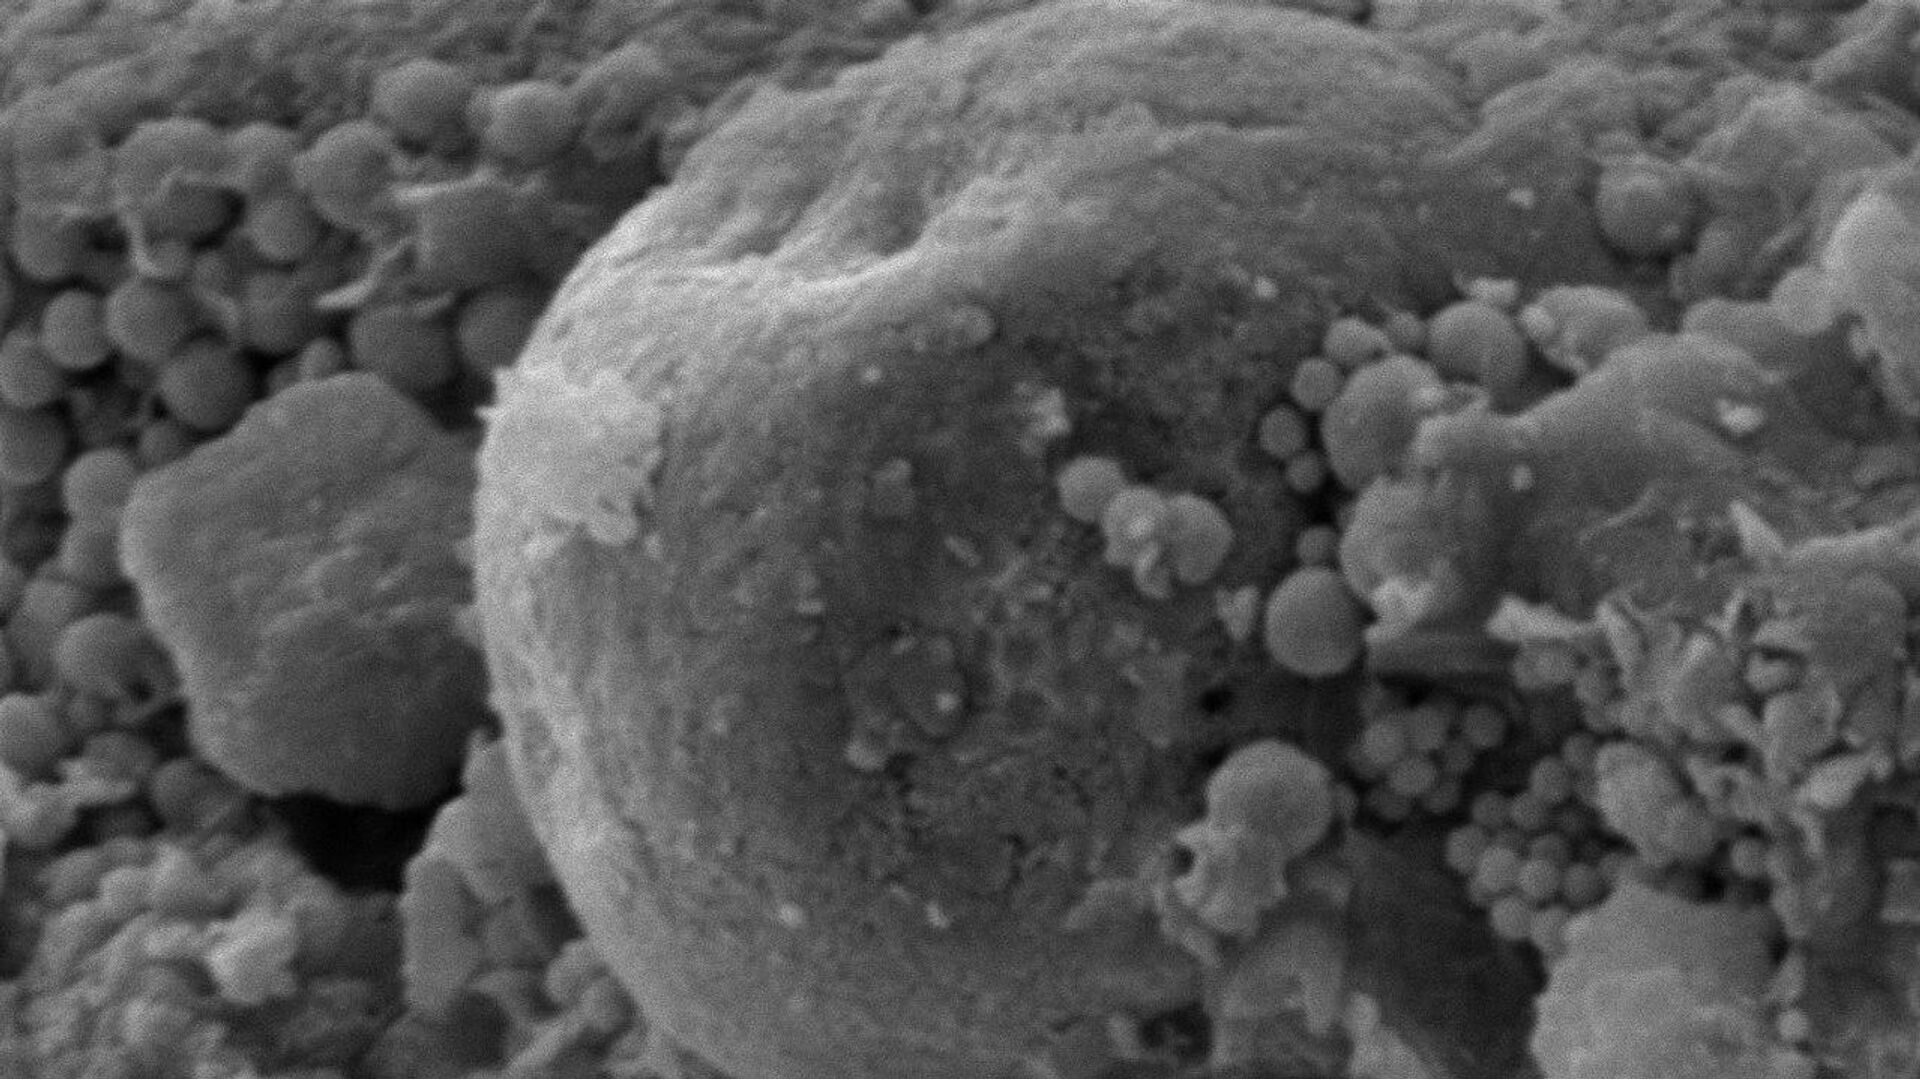 Снимок окаменелых микроорганизмов, обнаруженных внутри метеорита Оргей - РИА Новости, 1920, 15.09.2020